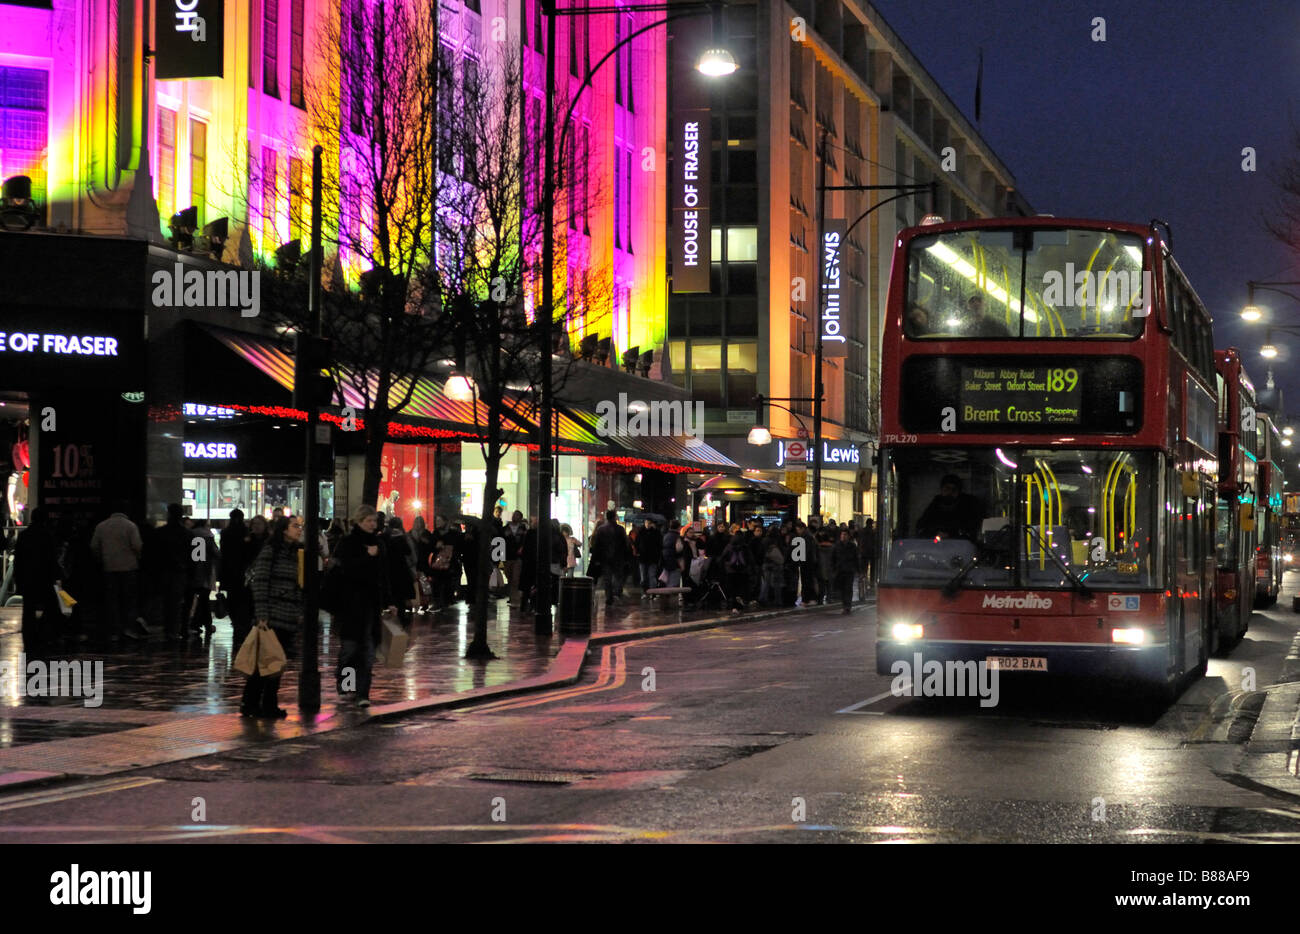 Double decker bus dans Oxford Street London United Kingdom Banque D'Images